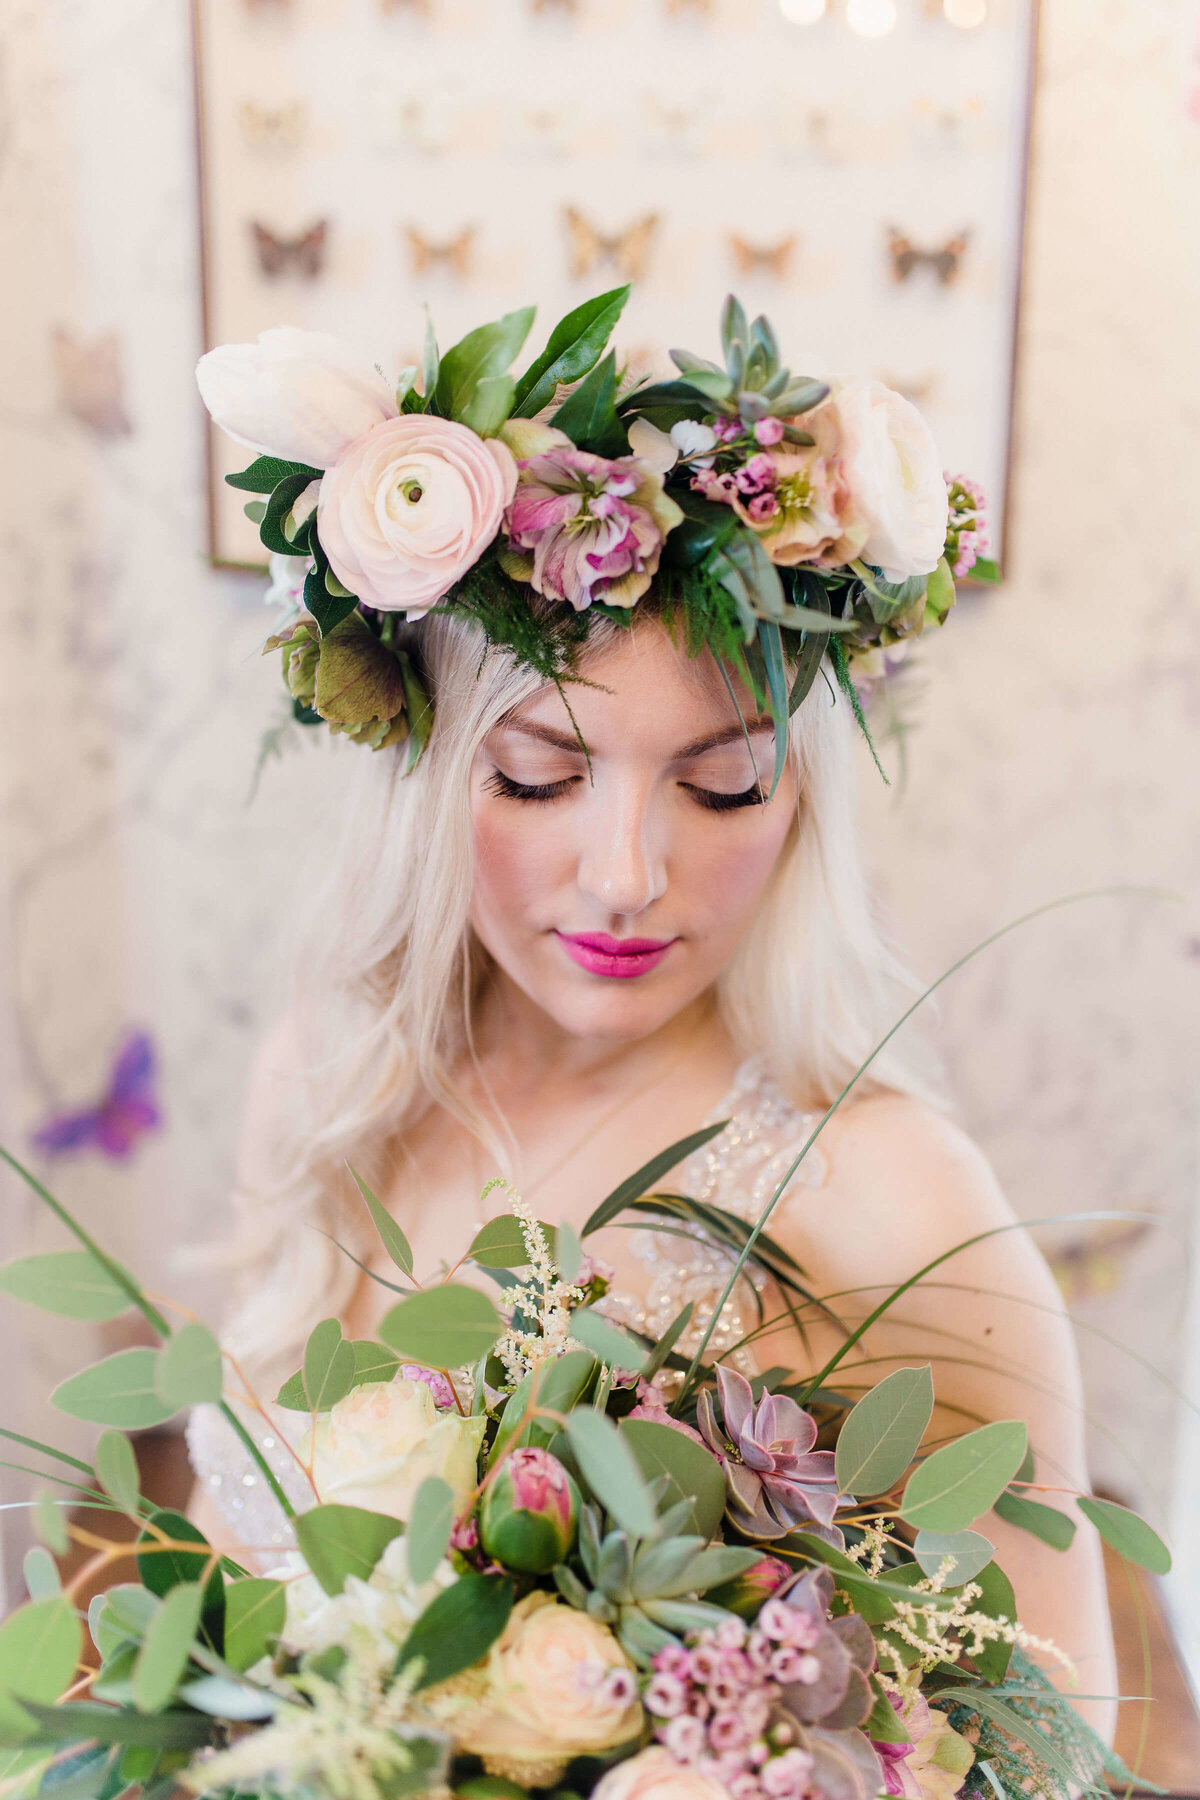 From_The_Wild_Florist_Devon_wedding_florist